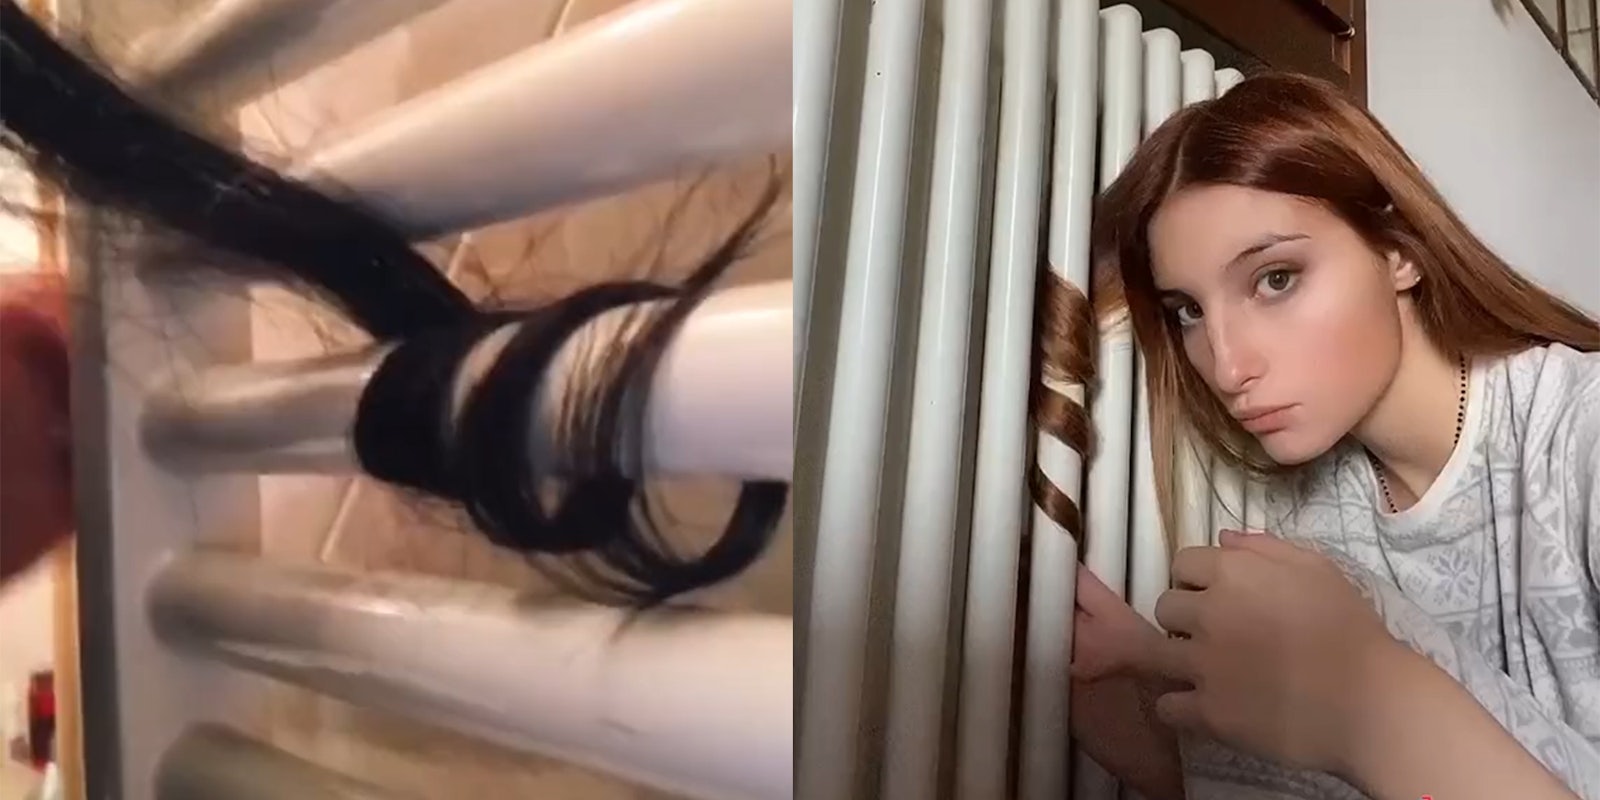 tiktok radiator hair curler